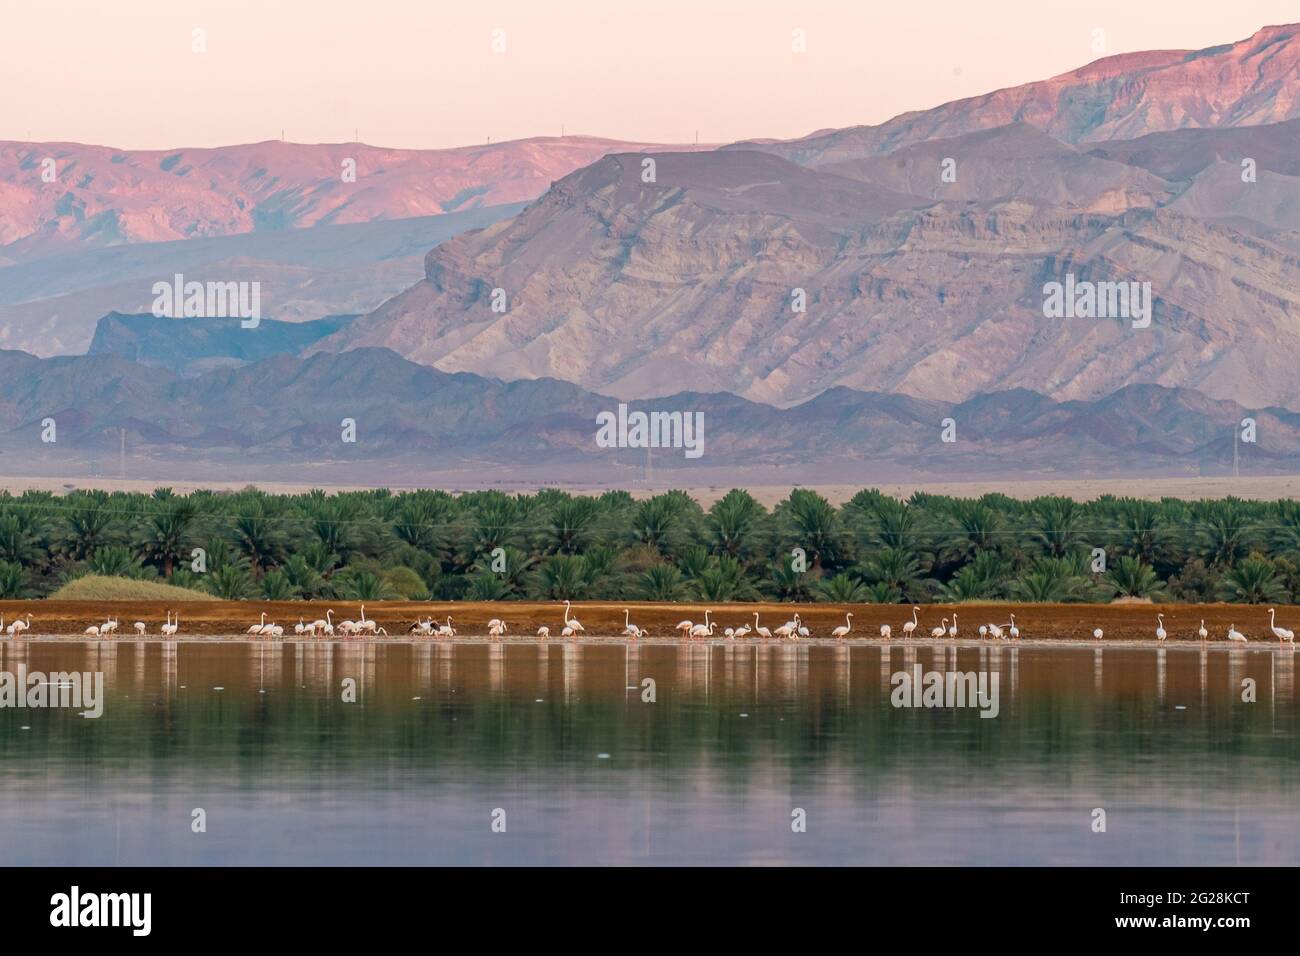 Eine Herde von Flamingo (Phoenicopterus roseus) watend in einem Wasserbecken. Fotografiert in der Arava, in der Nähe von Eilat, Israel, ist der größere Flamingo a la Stockfoto